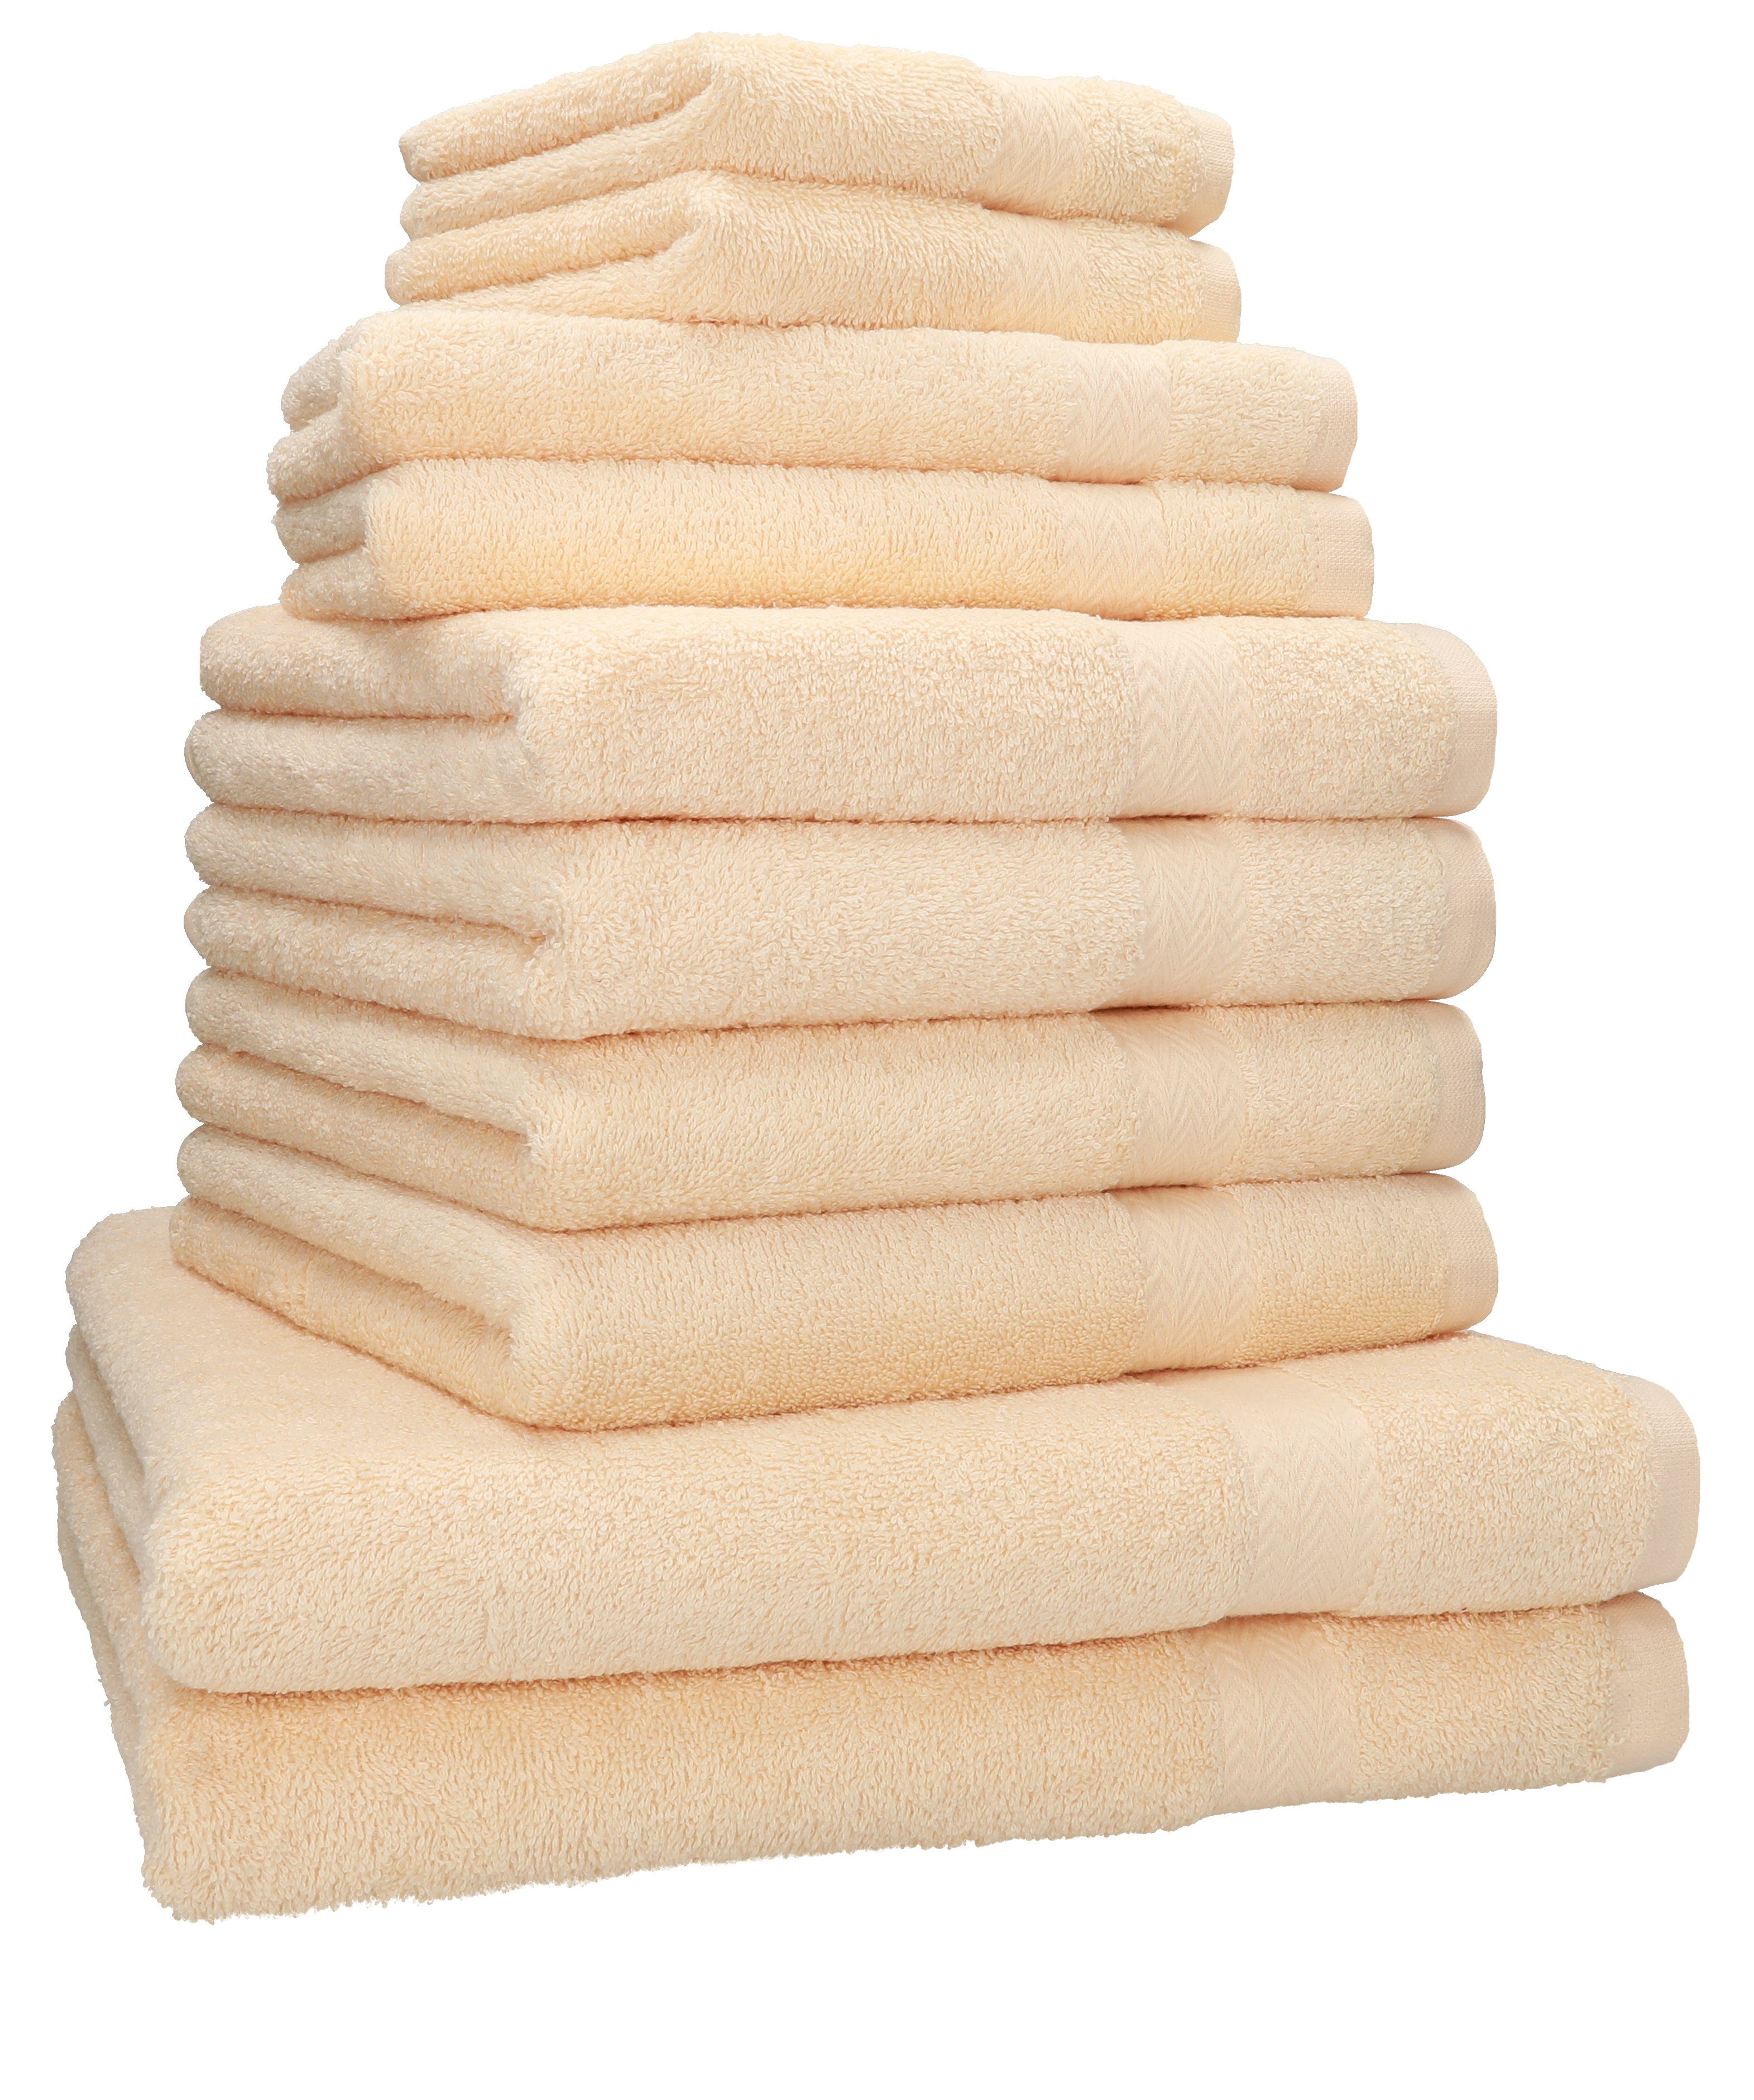 Betz Handtuch Set 10-TLG. Handtuch-Set Classic 100% Baumwolle 2 Duschtücher 4 Handtücher 2 Gästetücher 2 Seiftücher, 100% Baumwolle, (10-tlg) beige